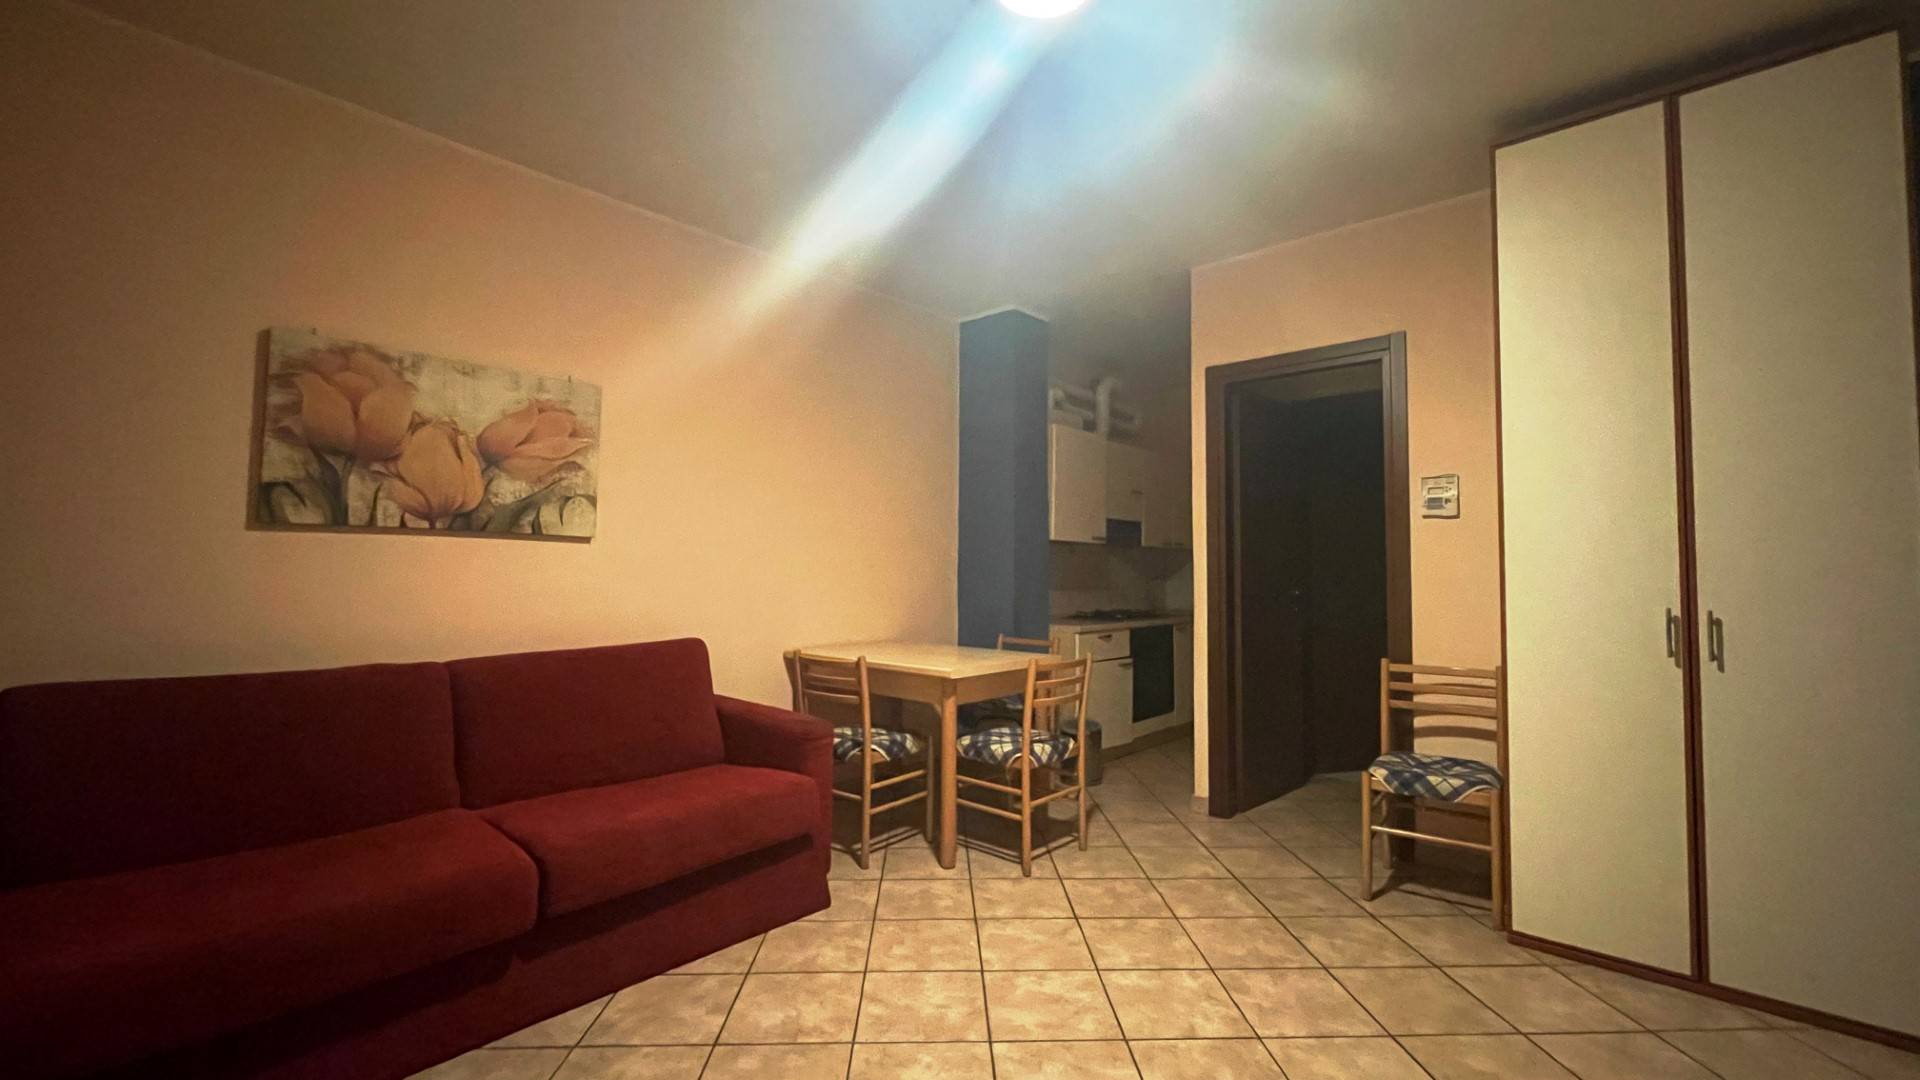 Appartamento in affitto a Tortona, 1 locali, prezzo € 300 | CambioCasa.it